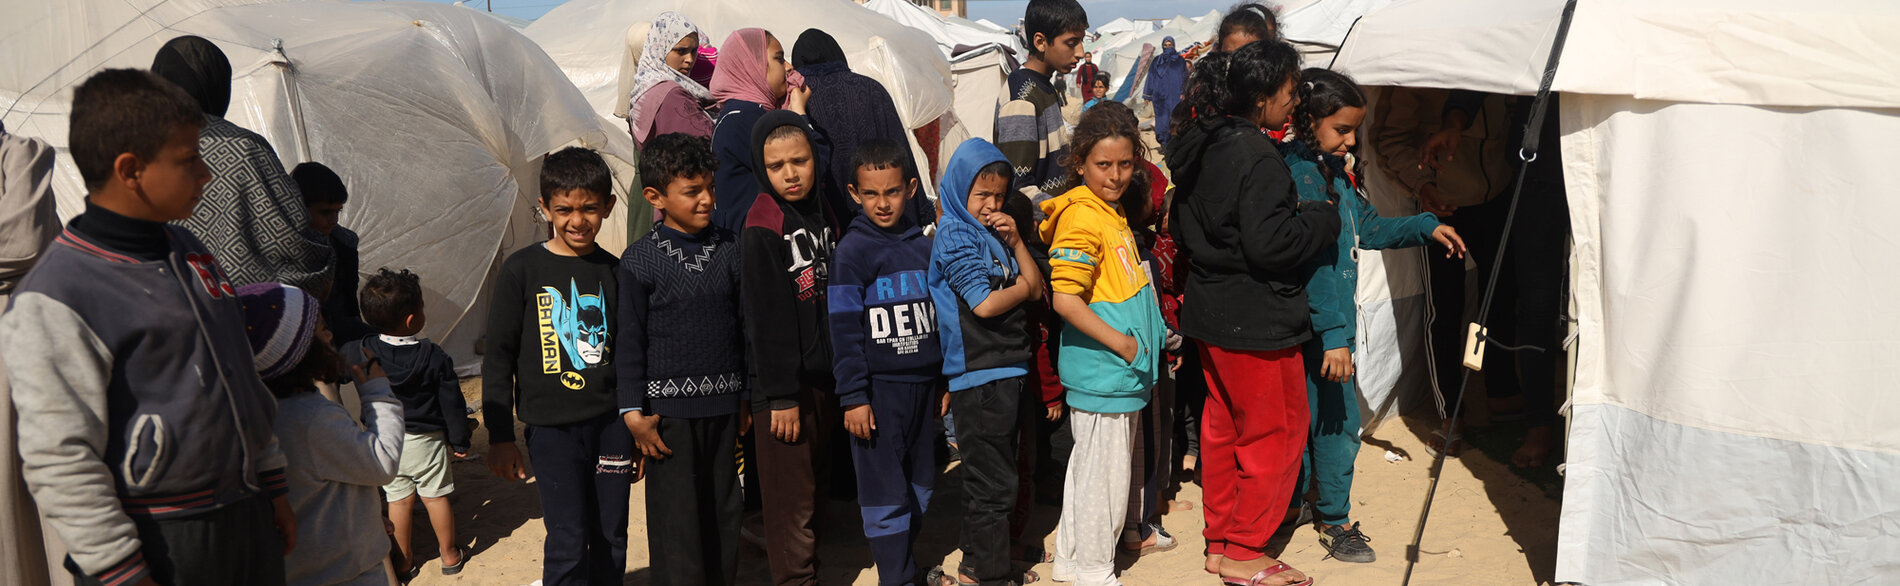 أطفال يصطفون في طابور أمام عيادة في خيمة لفحص سوء التغذية لديهم وإحالتهم للعلاج حسبما تقتضيه الضرورة. تصوير اليونيسف/إياد البابا.